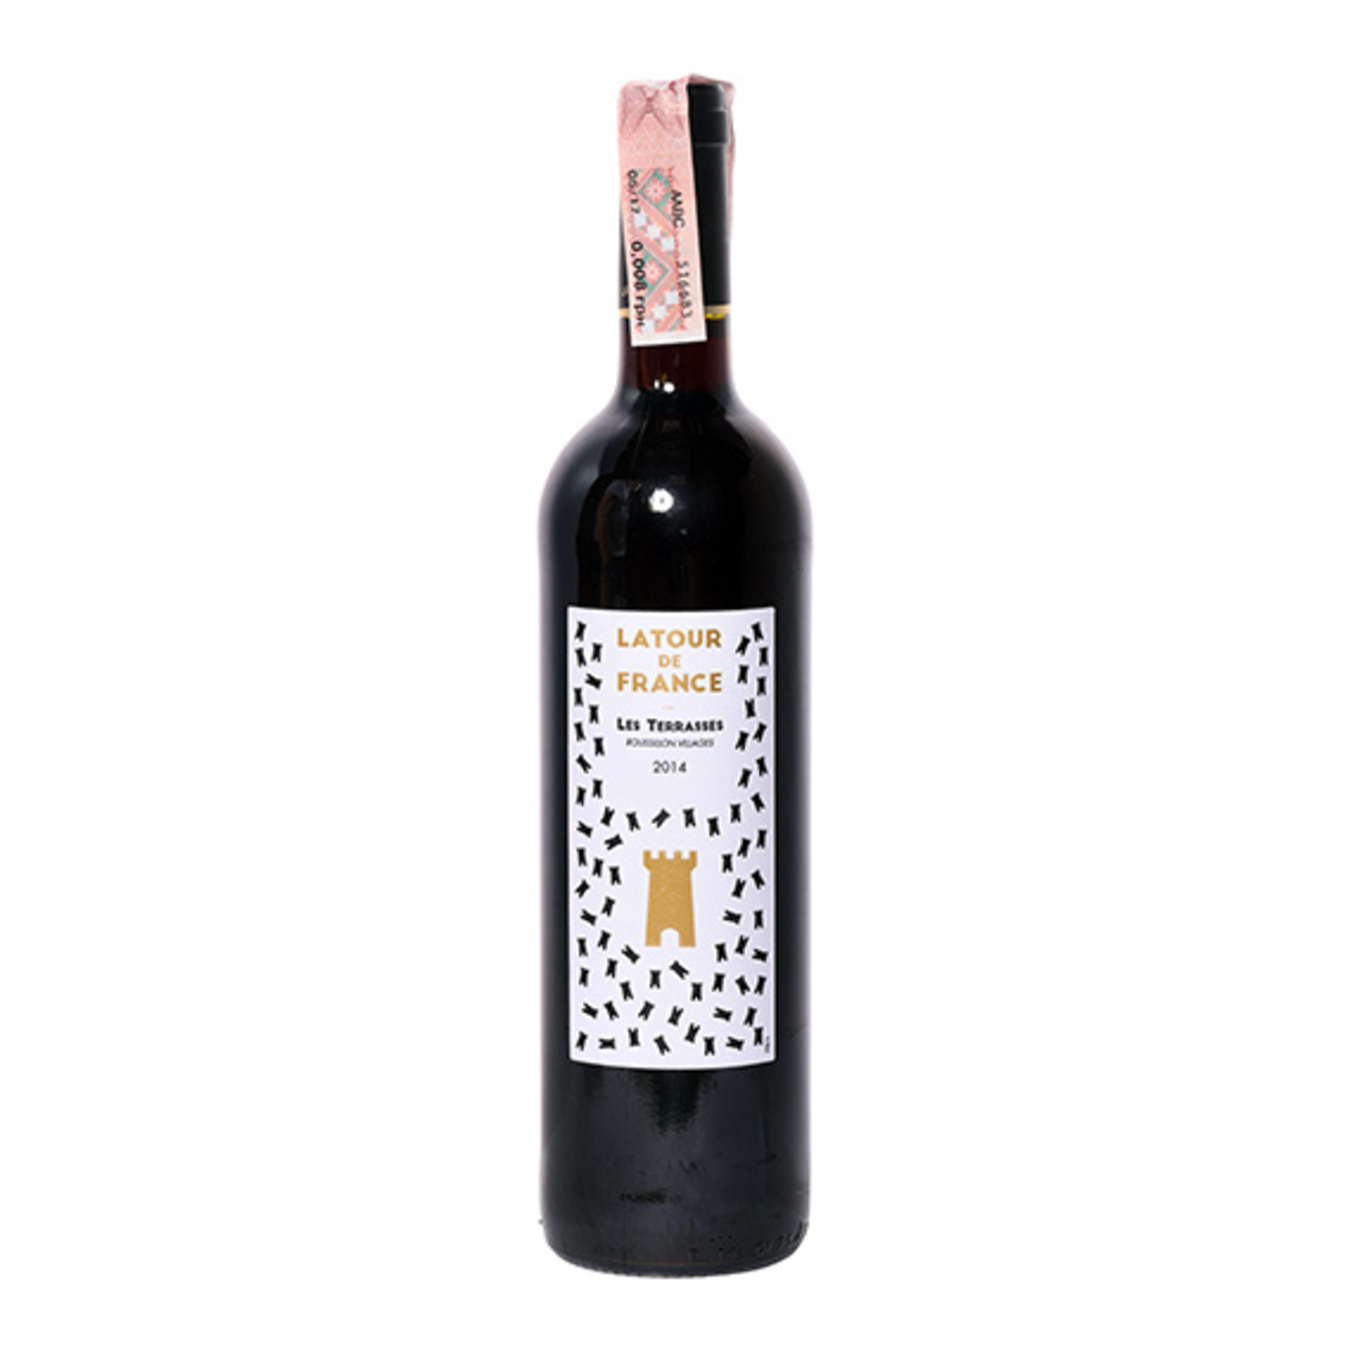 Вино Latour de France Les Terrasses Cotes du Roussillon Villages красное сухое 14,5% 0,75л